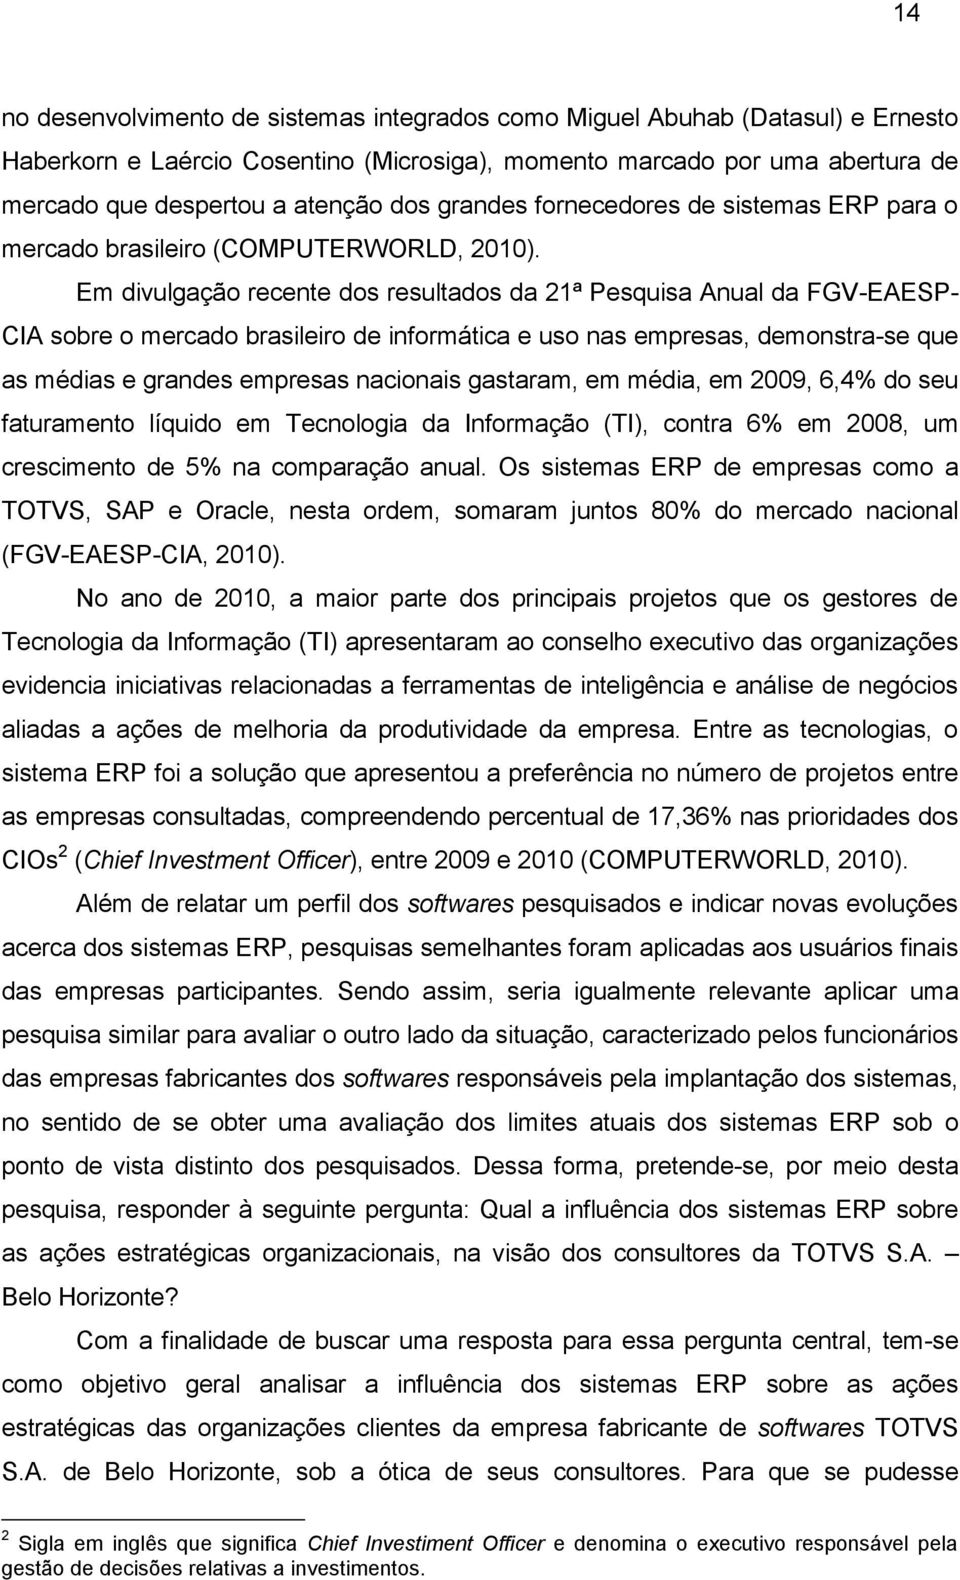 Em divulgação recente dos resultados da 21ª Pesquisa Anual da FGV-EAESP- CIA sobre o mercado brasileiro de informática e uso nas empresas, demonstra-se que as médias e grandes empresas nacionais